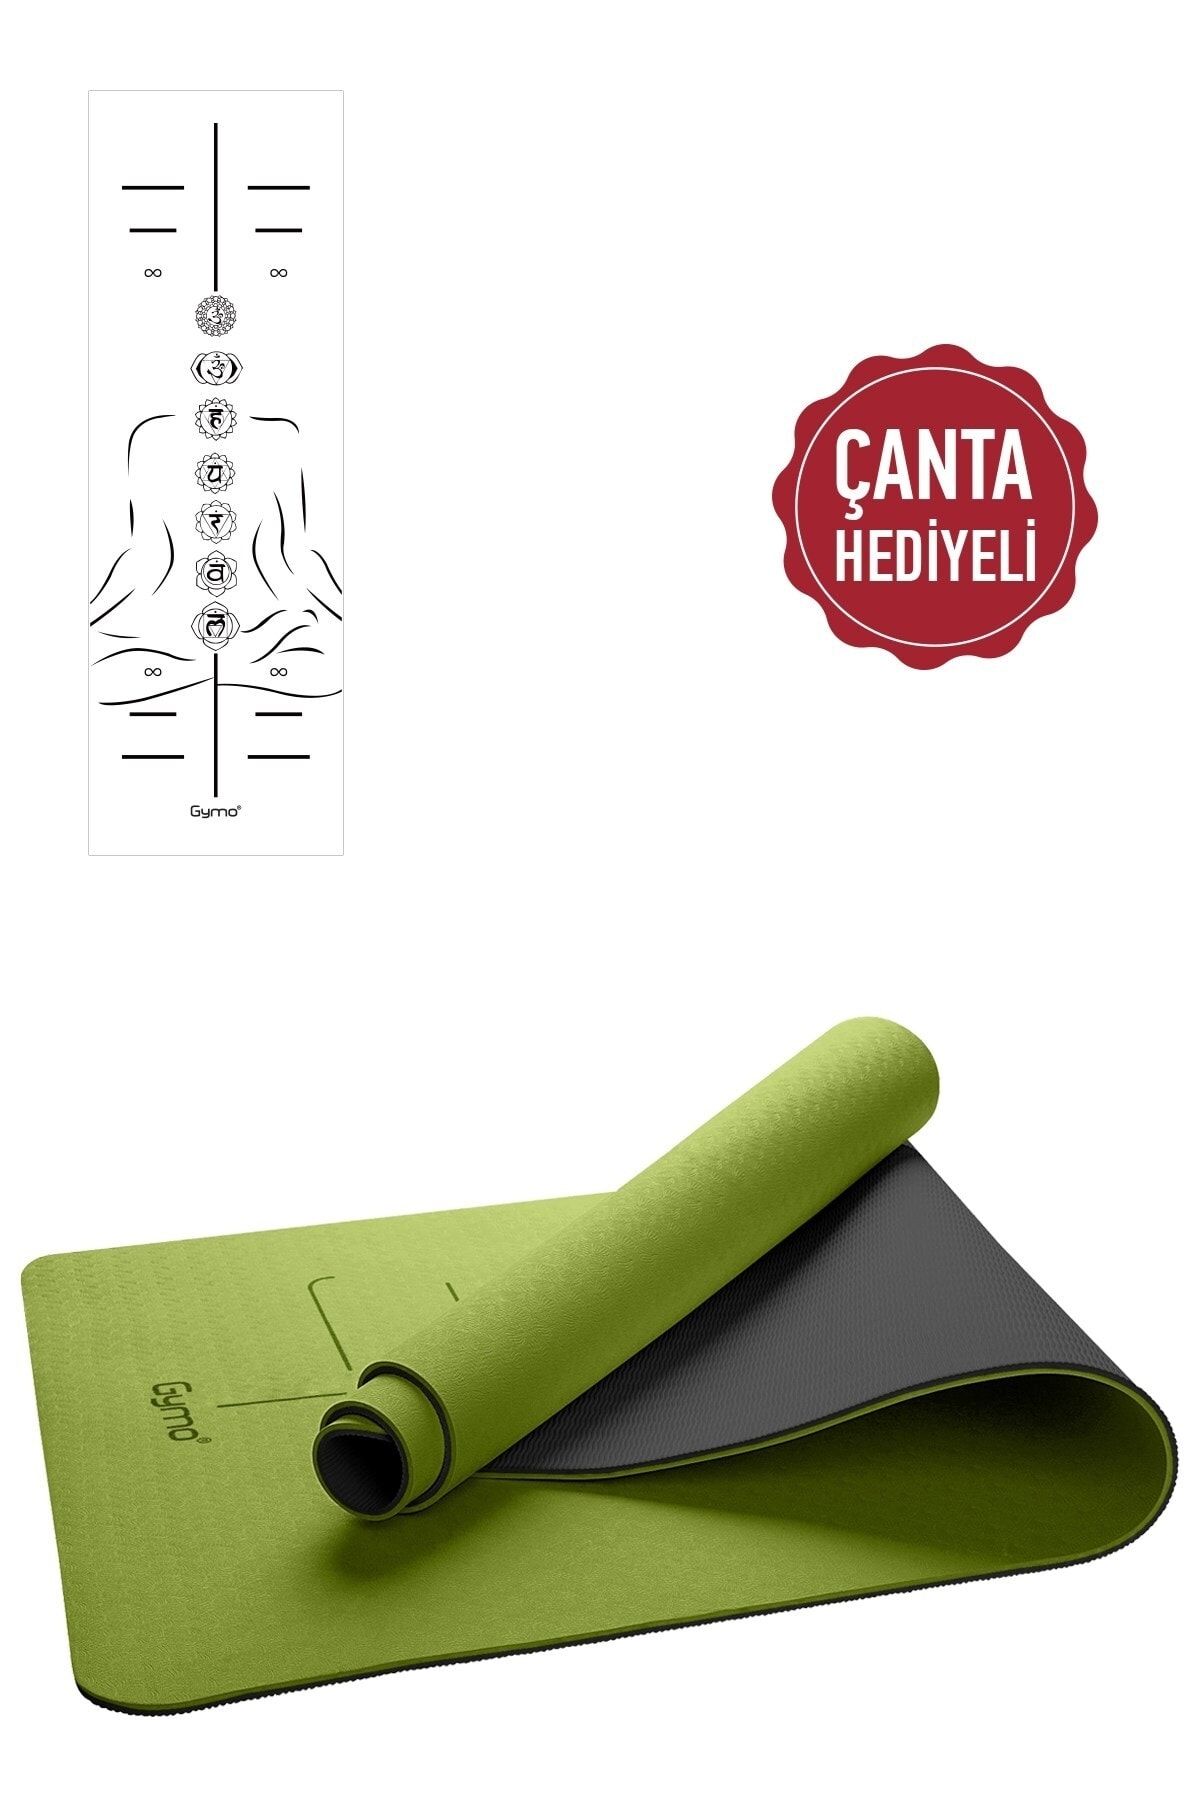 Gymo Hizalamalı Sembol 6mm Tpe Yoga Matı Pilates Minderi Yeşil Taşıma Çantası Hediye